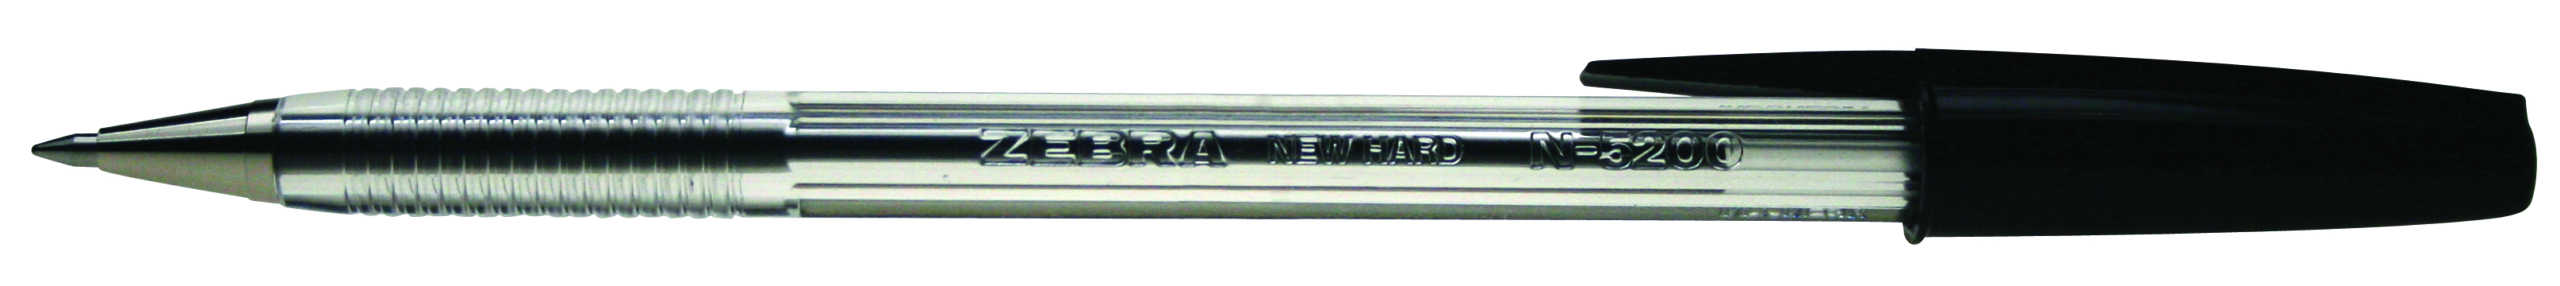 N-5200 zebra refillable ballpoint pen 1